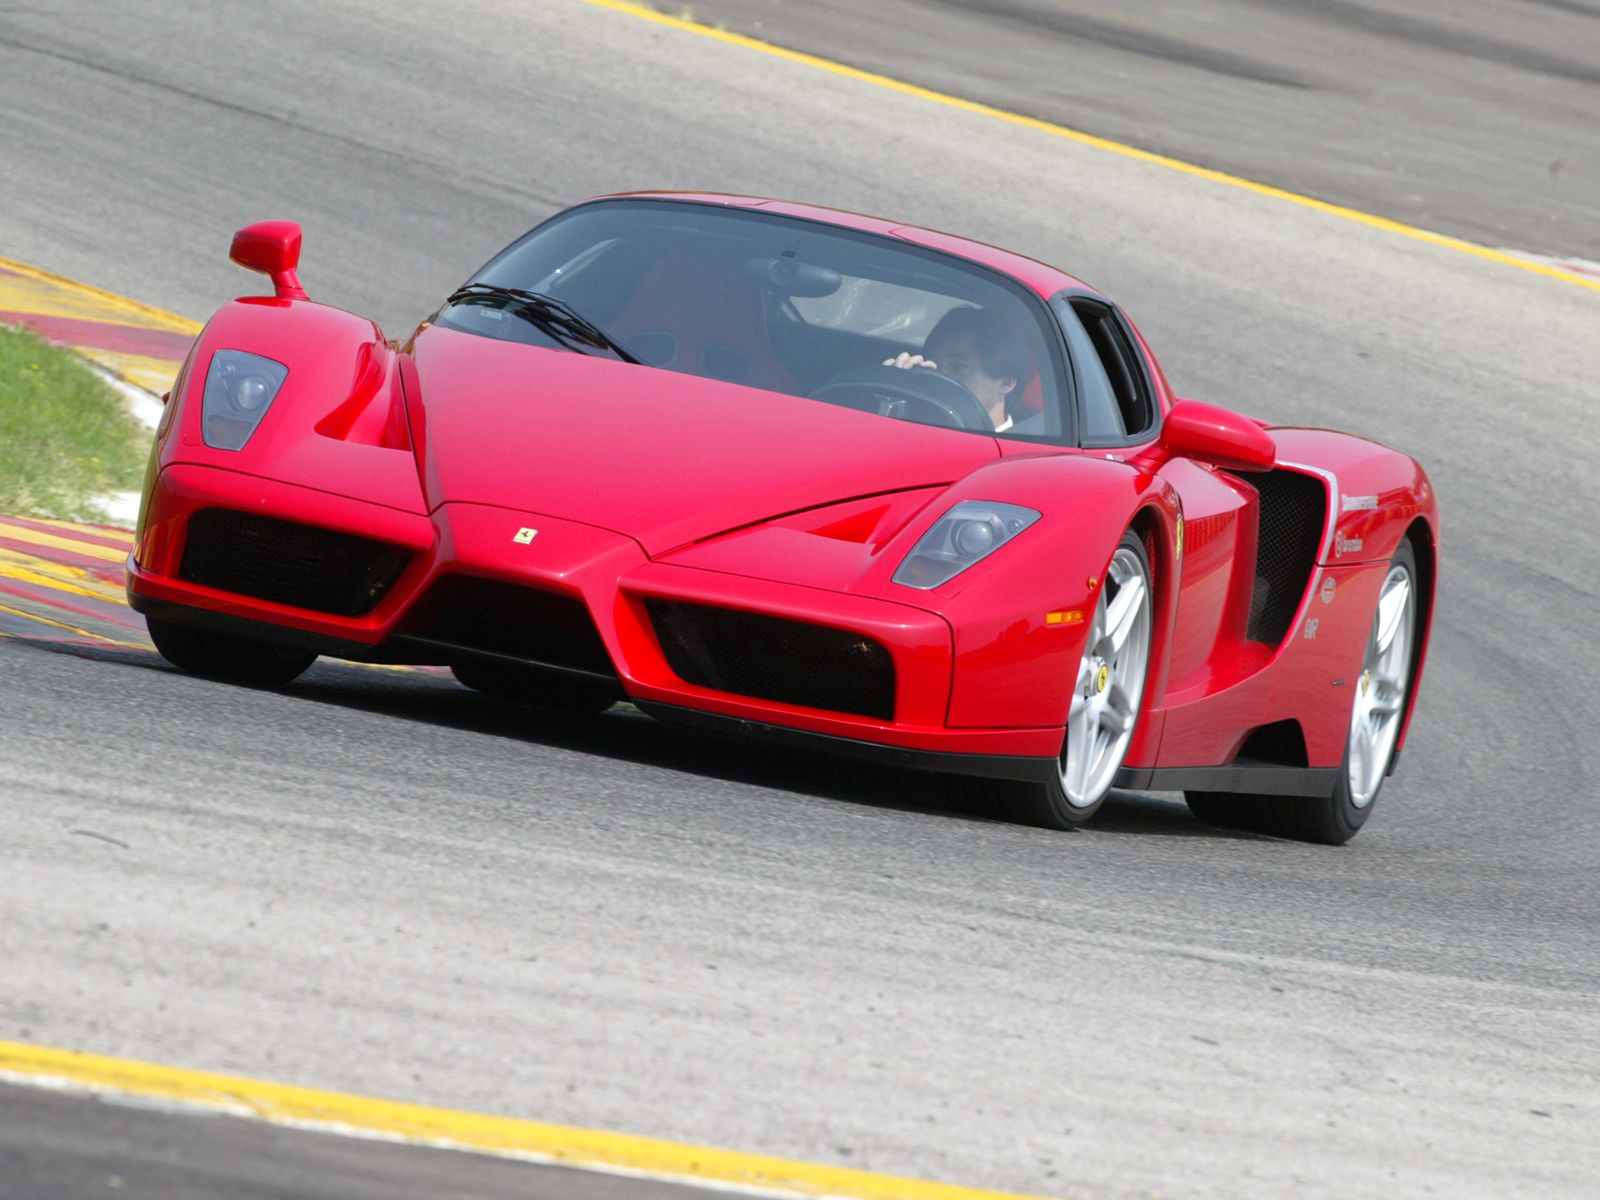 http://2.bp.blogspot.com/-1ptBsJ1-RFc/ThzAuFc8ItI/AAAAAAAAB60/XGZ1Etu9xJ8/s1600/Ferrari+Enzo++2013+pic5.jpg